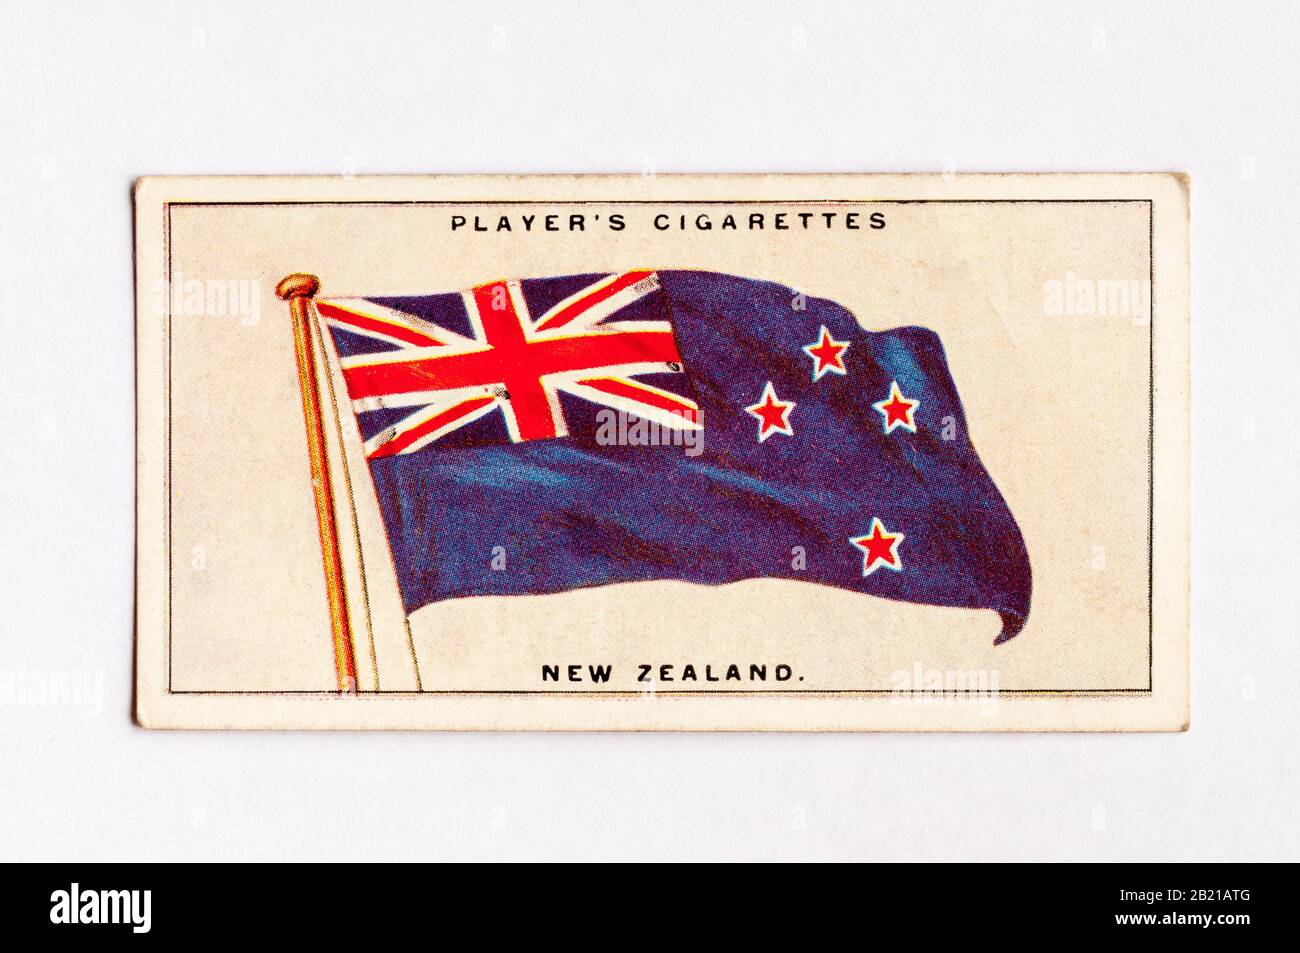 La tarjeta de cigarrillos del jugador en la serie de Banderas de la Liga de las Naciones muestra la bandera de Nueva Zelanda. Publicado En 1928. Foto de stock